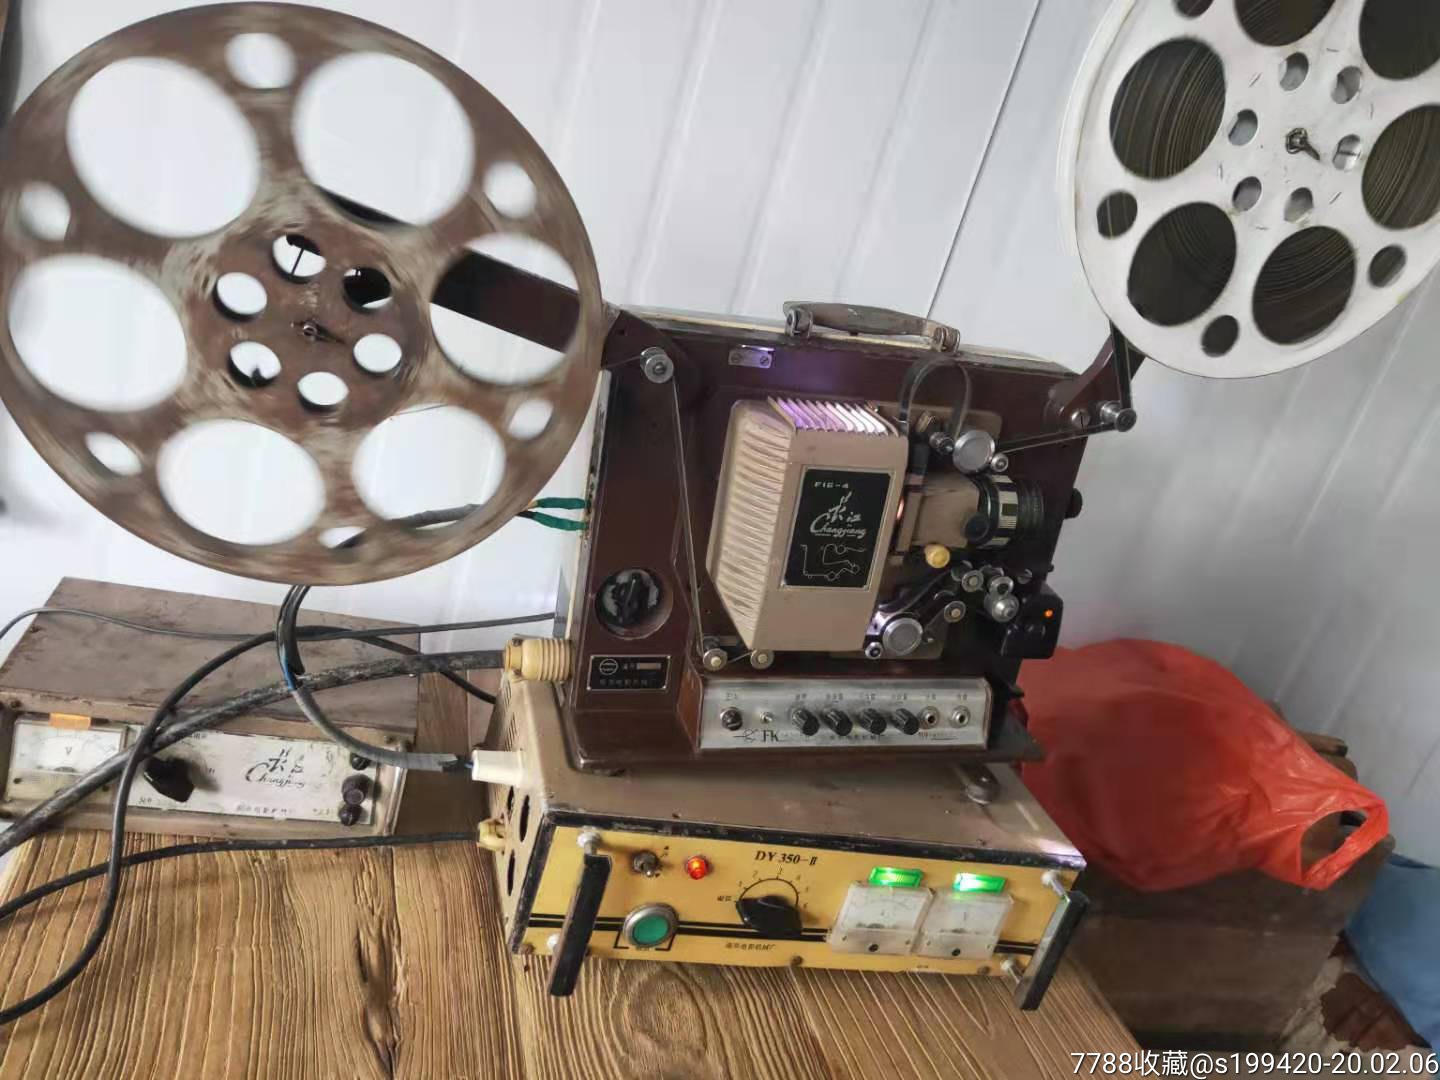 江苏南京产16毫米老长江牌电影放映机一套正常放映且声音响亮.